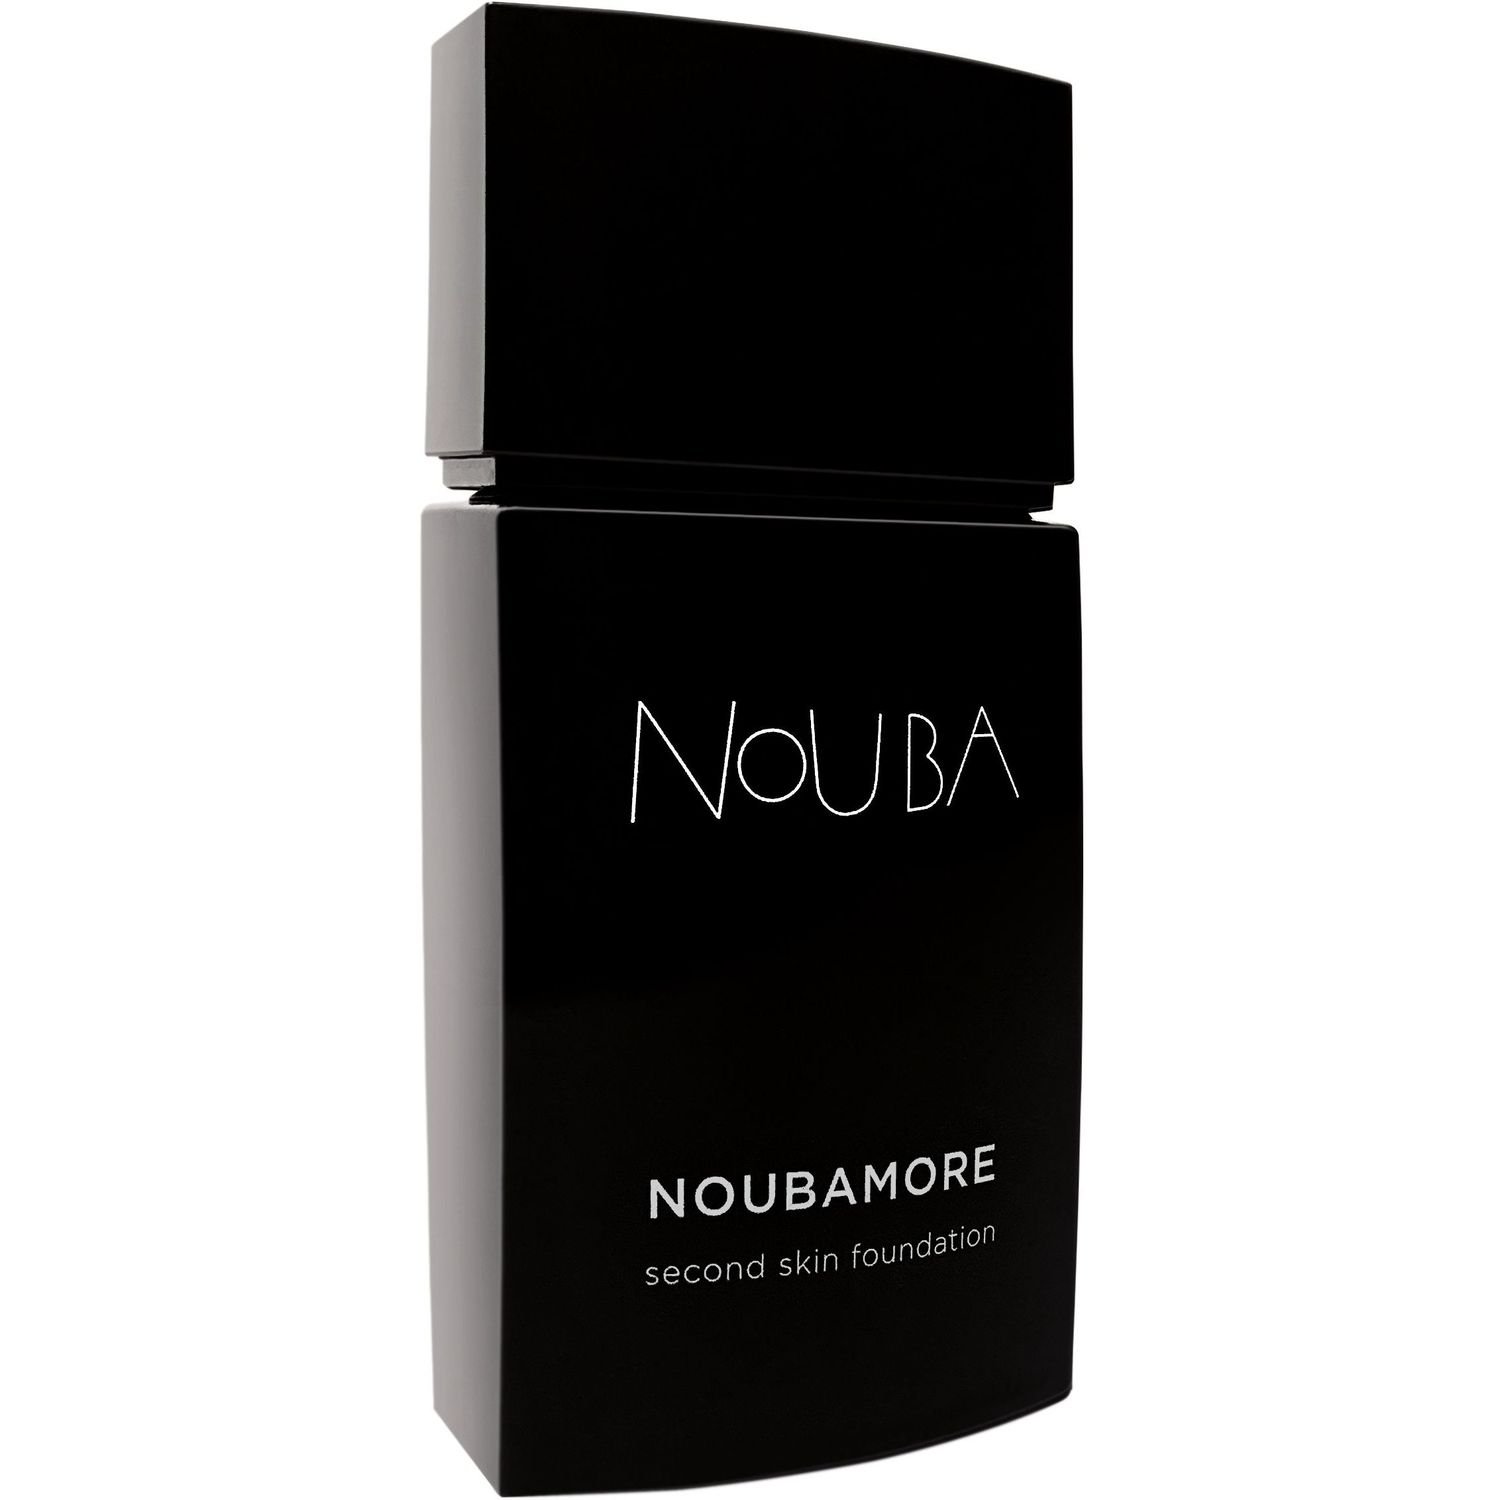 Тональная основа Nouba Noubamore Second Skin тон 81, 30 мл - фото 1